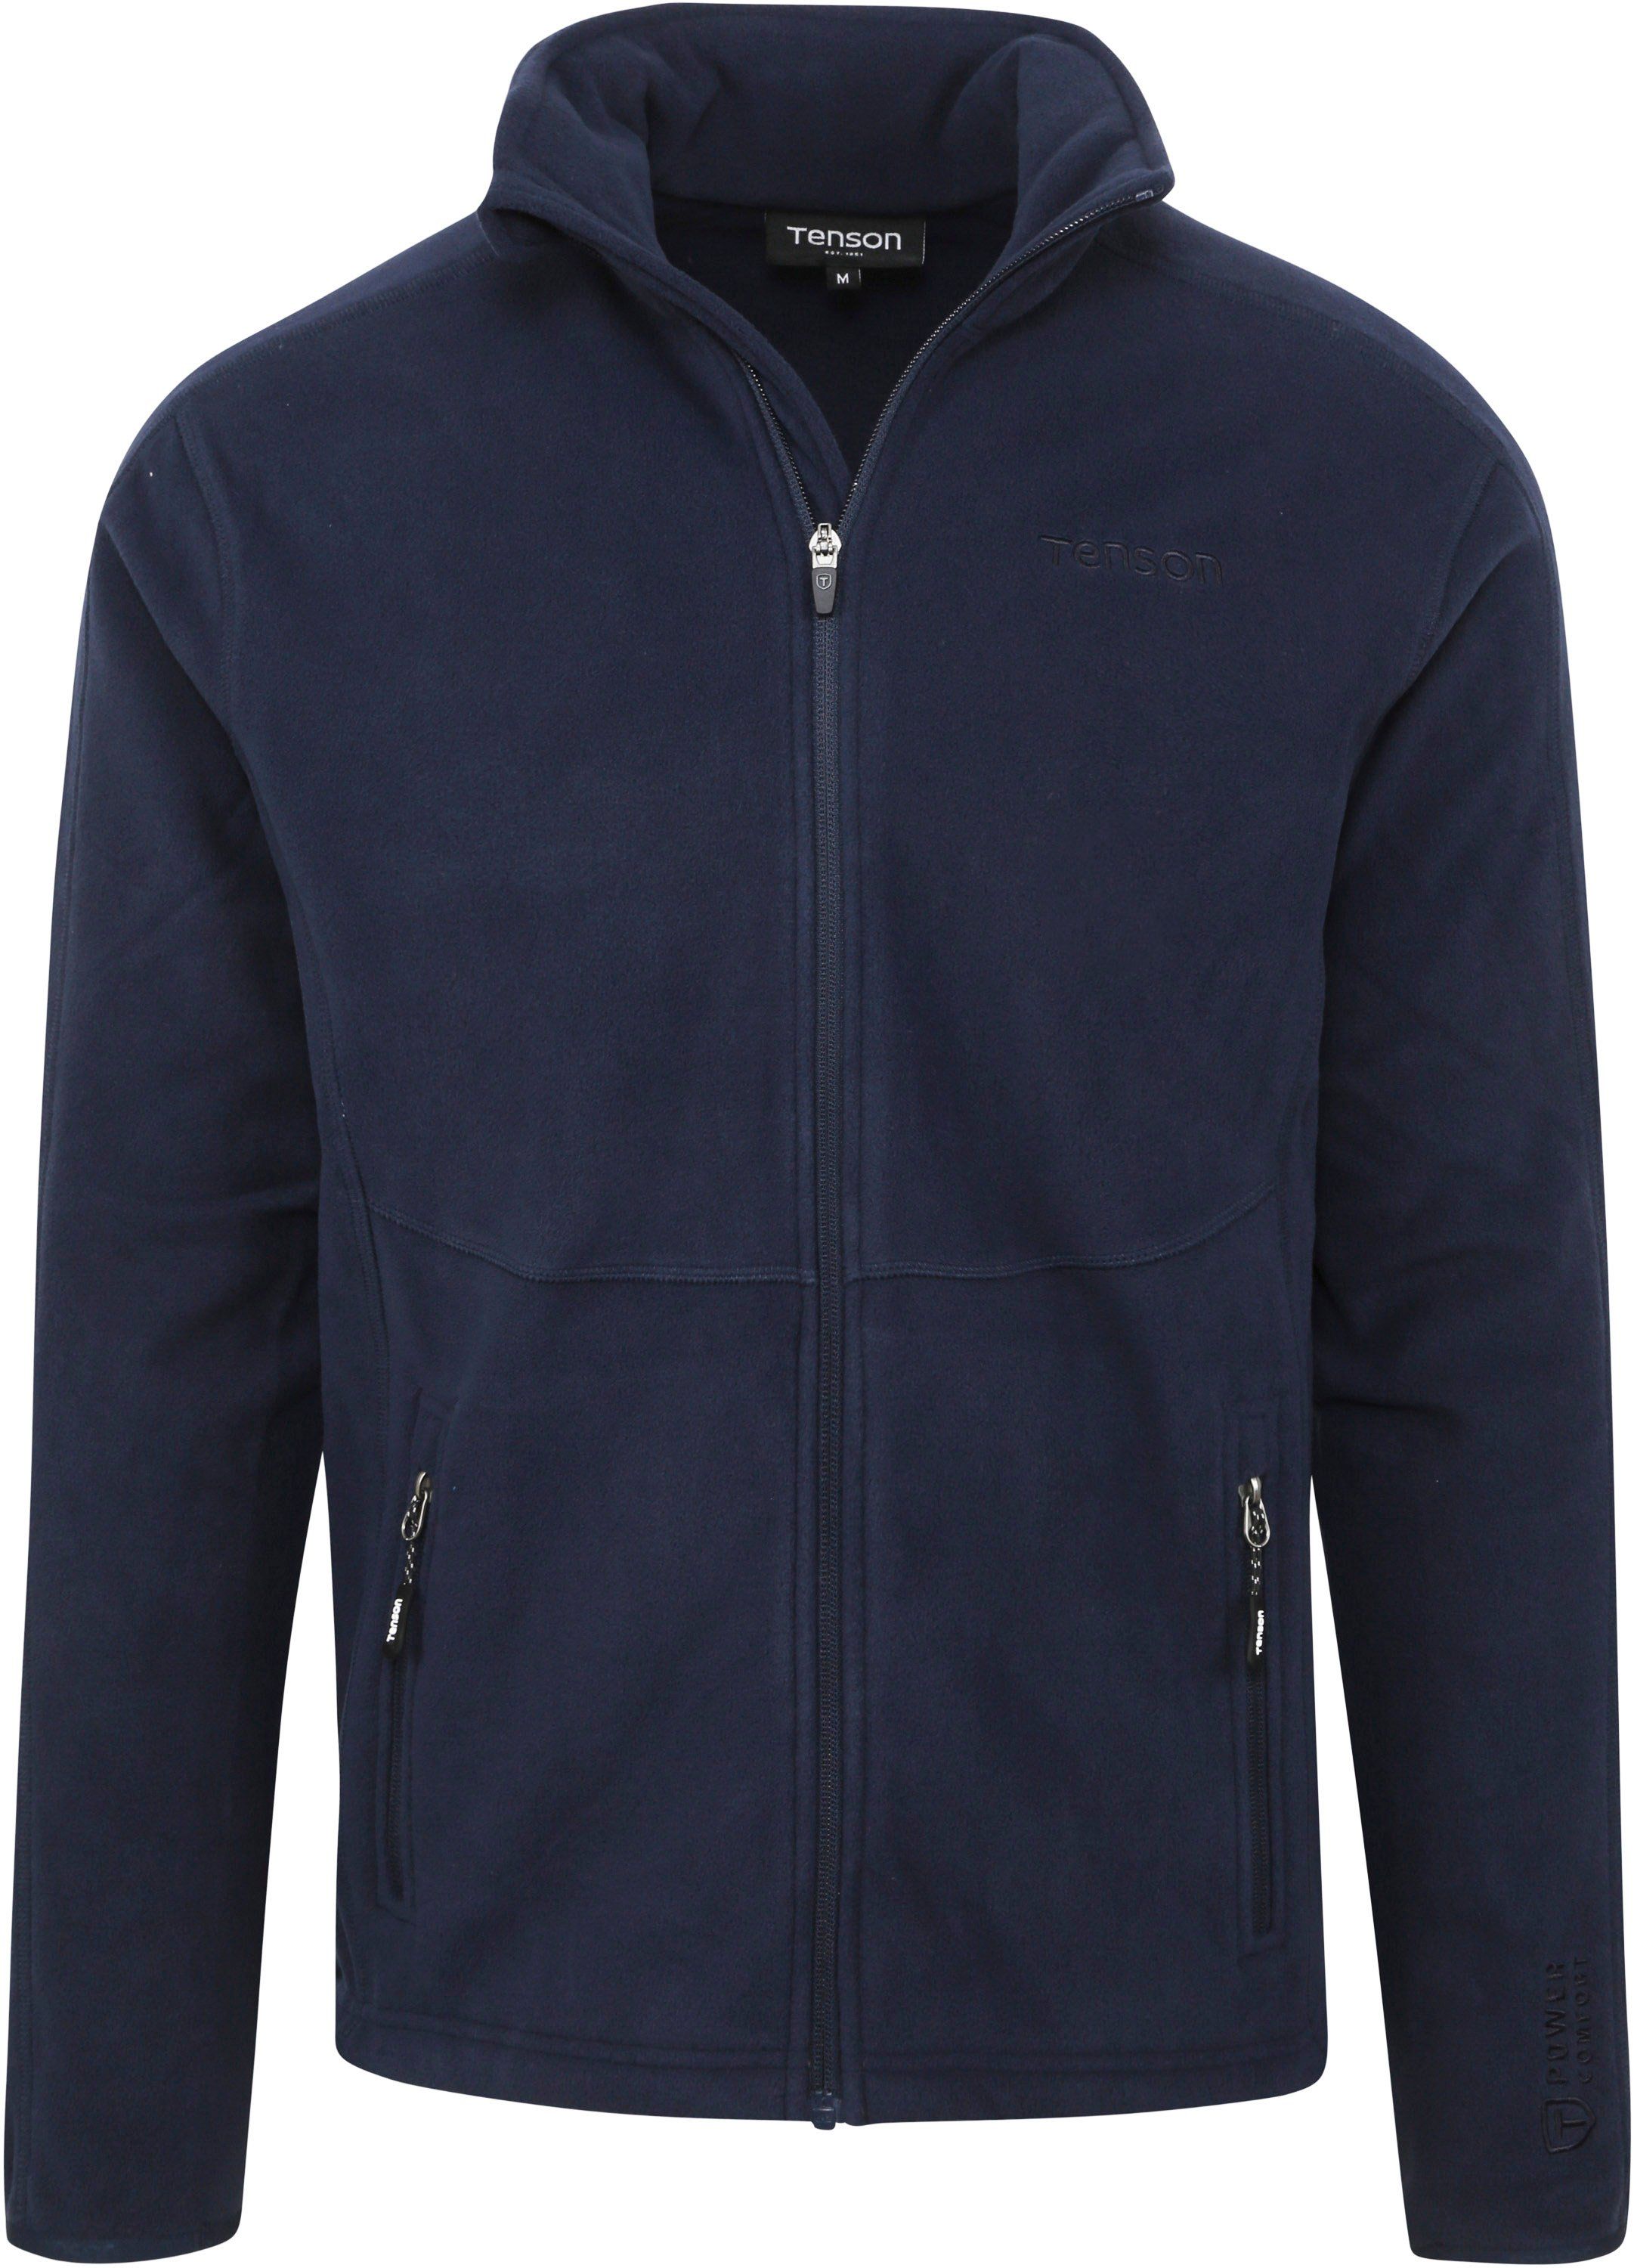 Tenson Miracle Fleece Jacket Navy Blue Dark Blue size XL